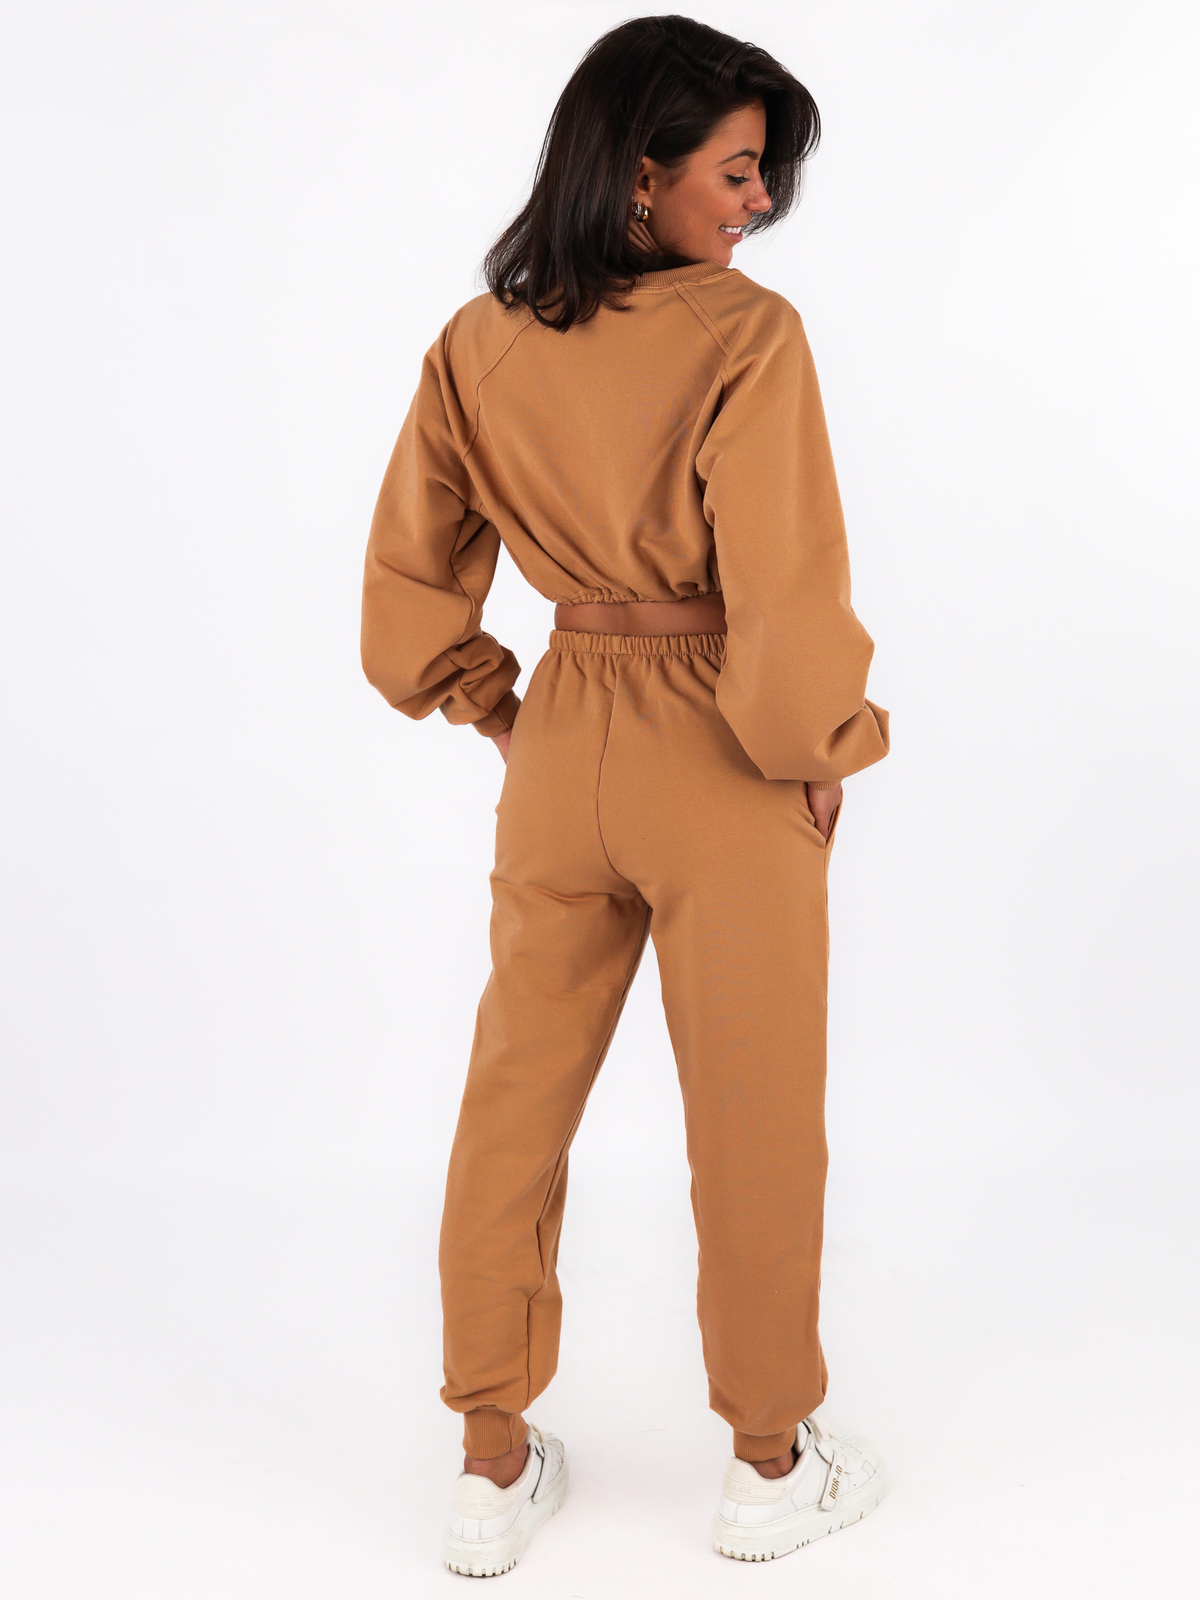 Dresowy komplet krótka oversizowa bluza + spodnie camel C120 k01